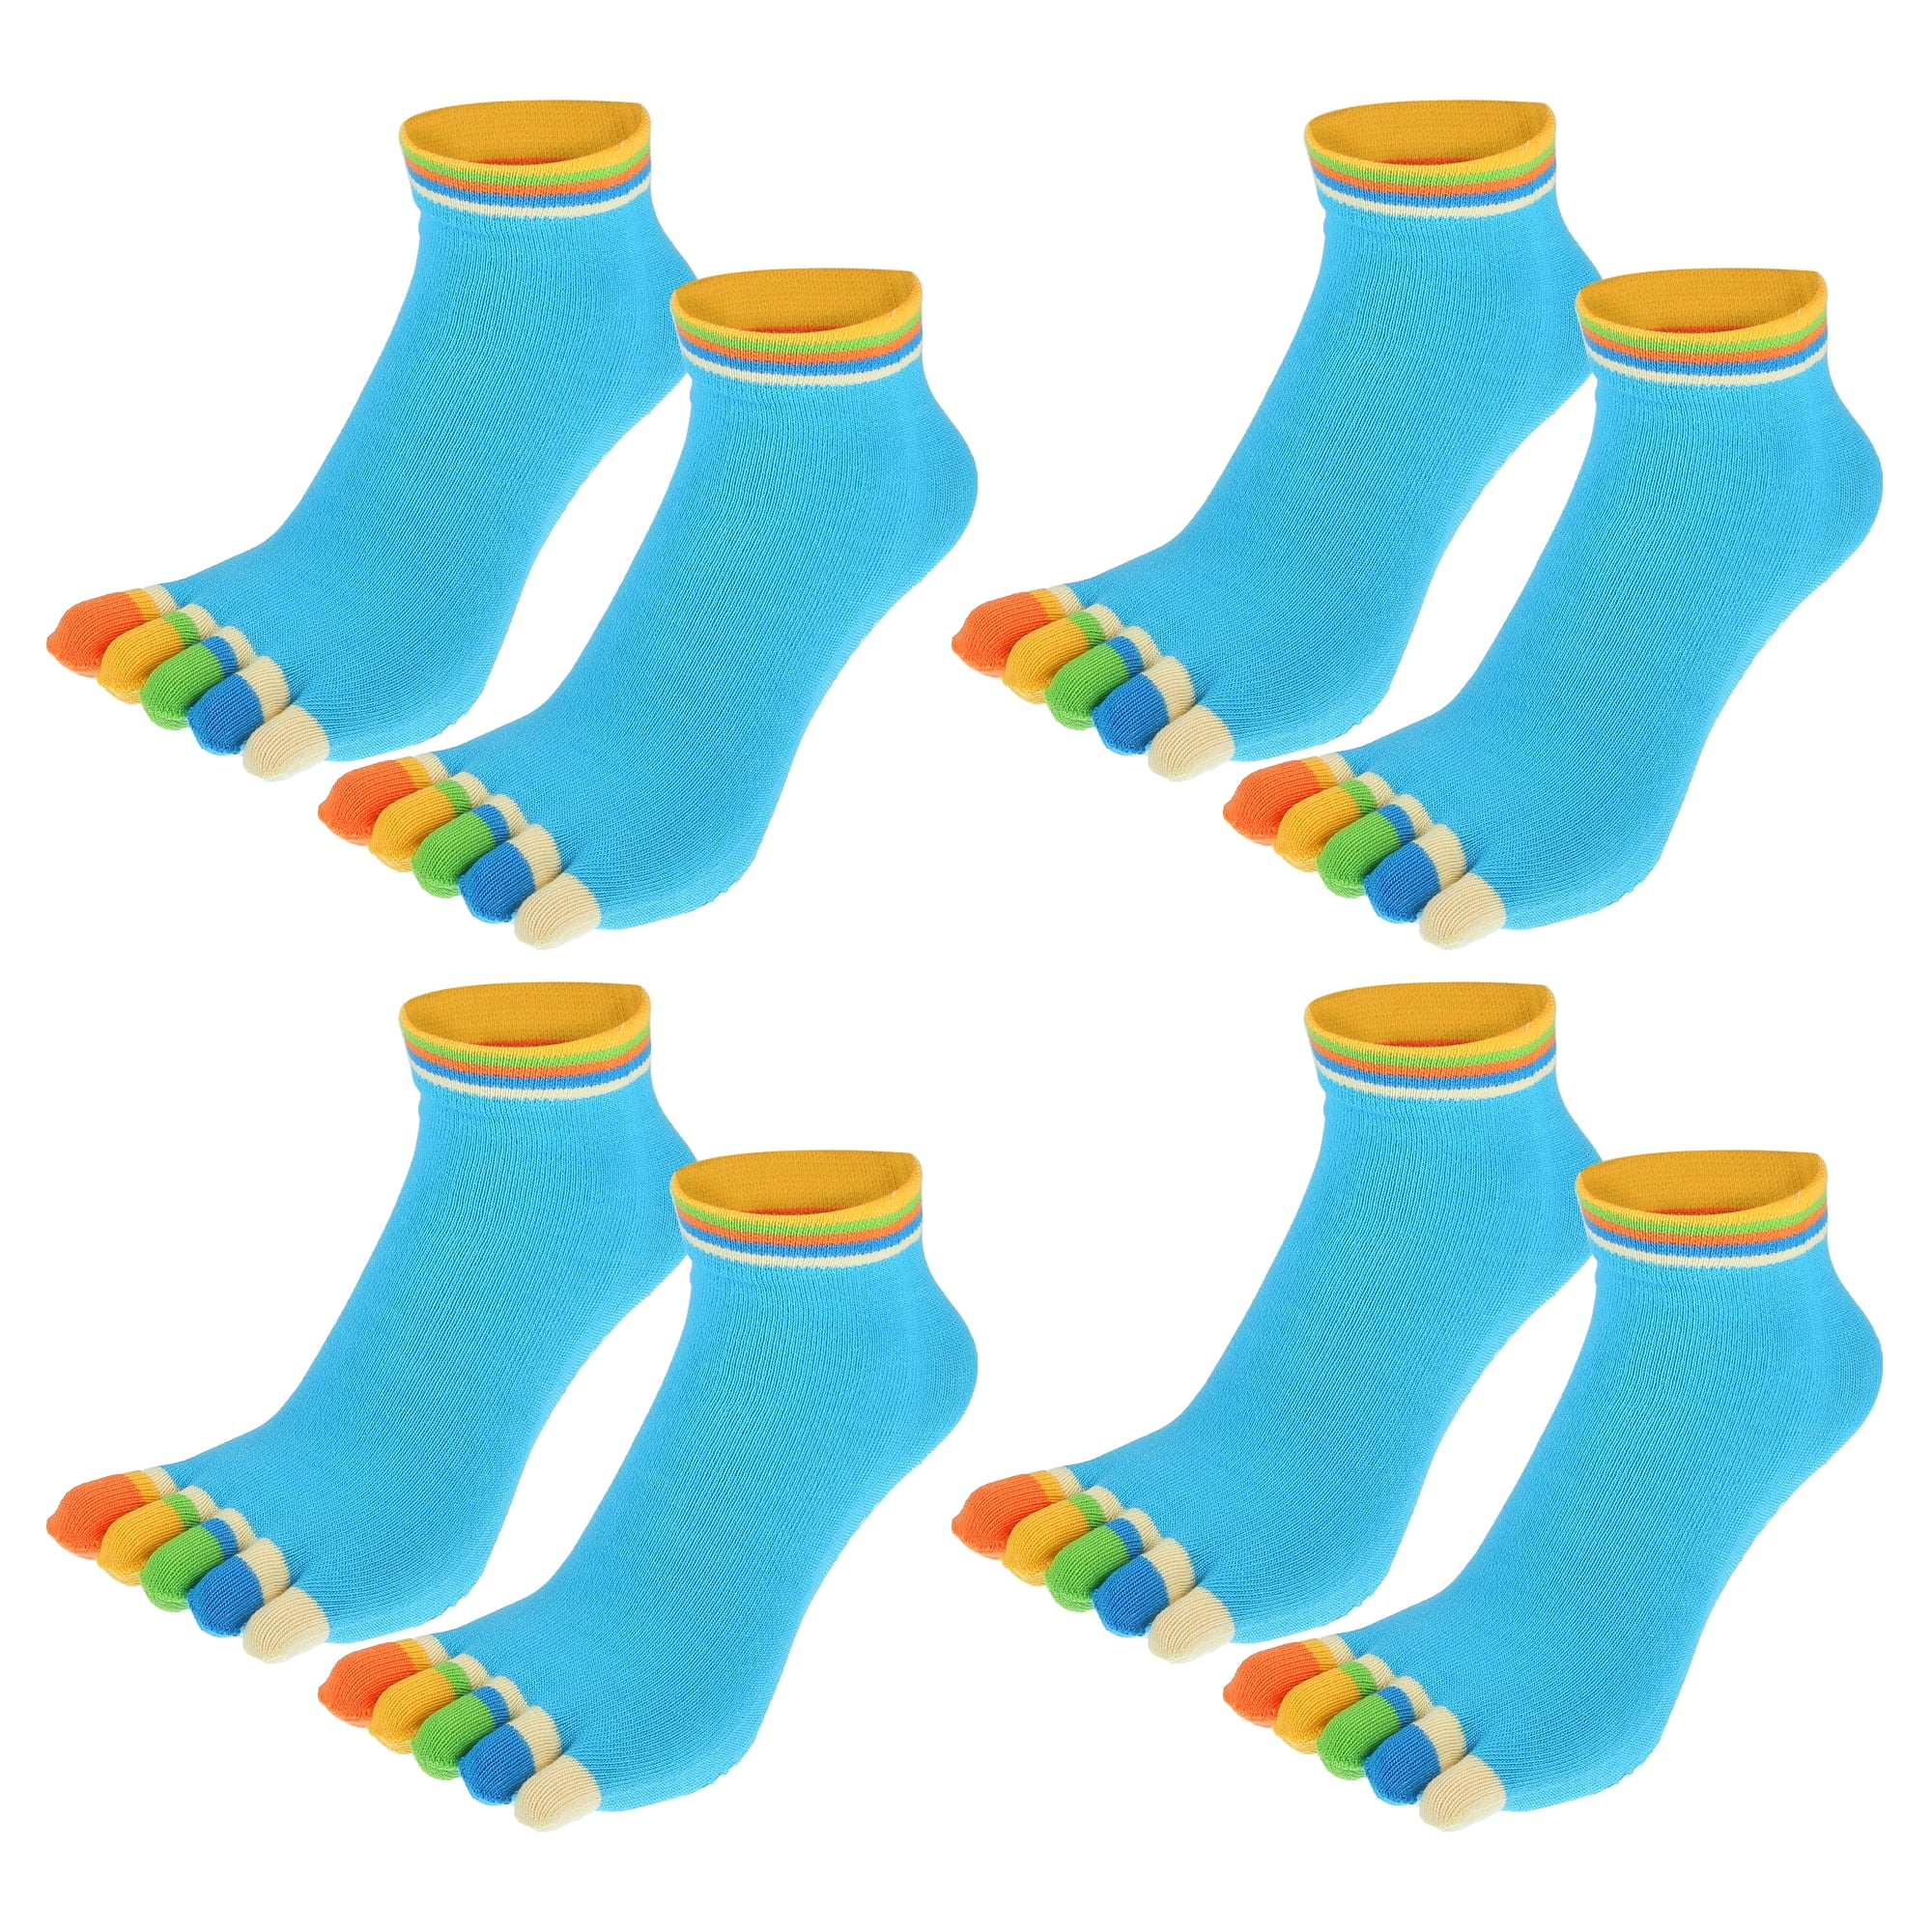 Comprar calcetines con dedos baratos en Aliexpress - Planeta Barefoot 360